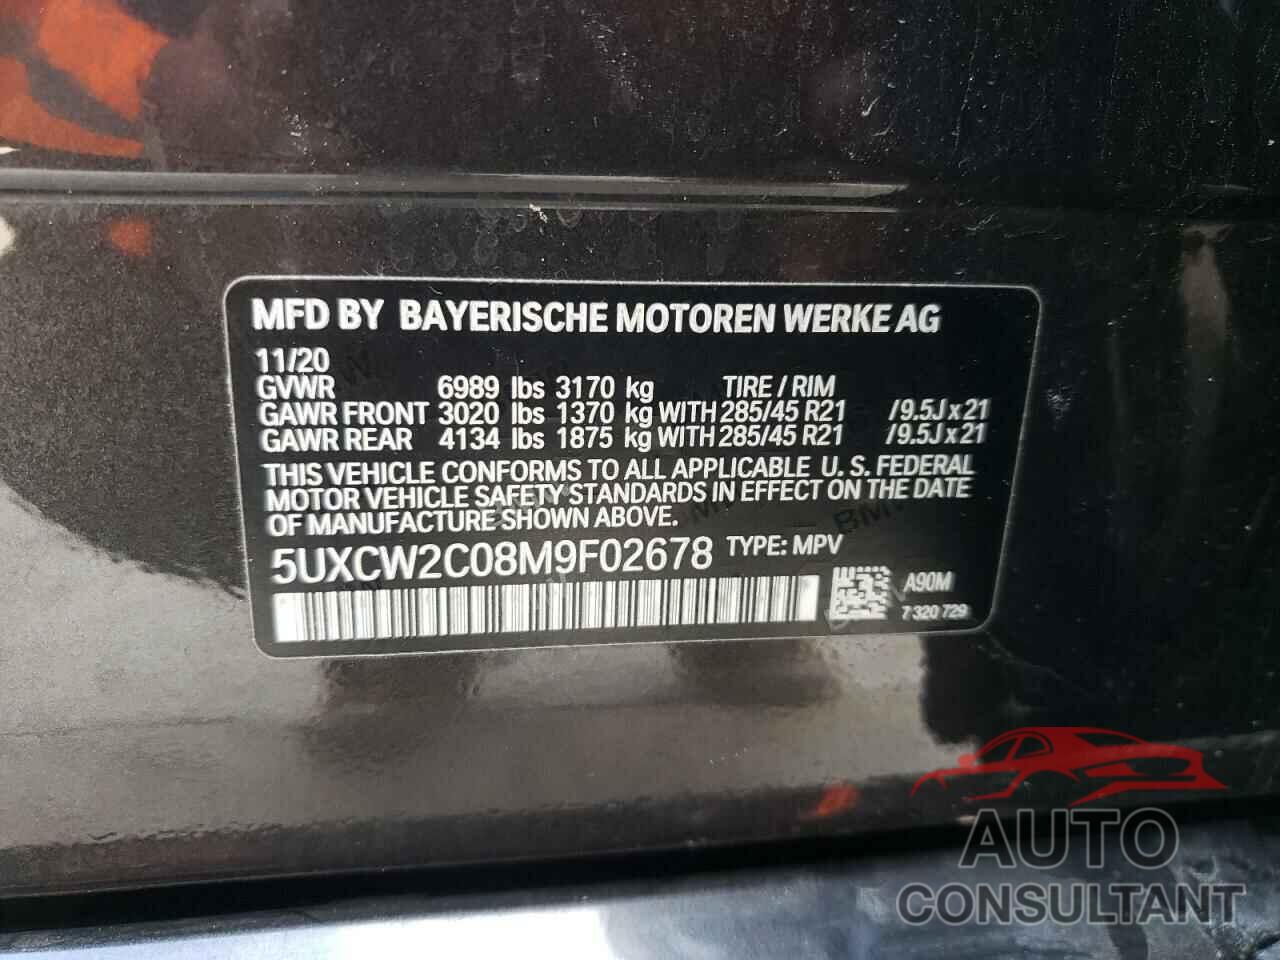 BMW X7 2021 - 5UXCW2C08M9F02678